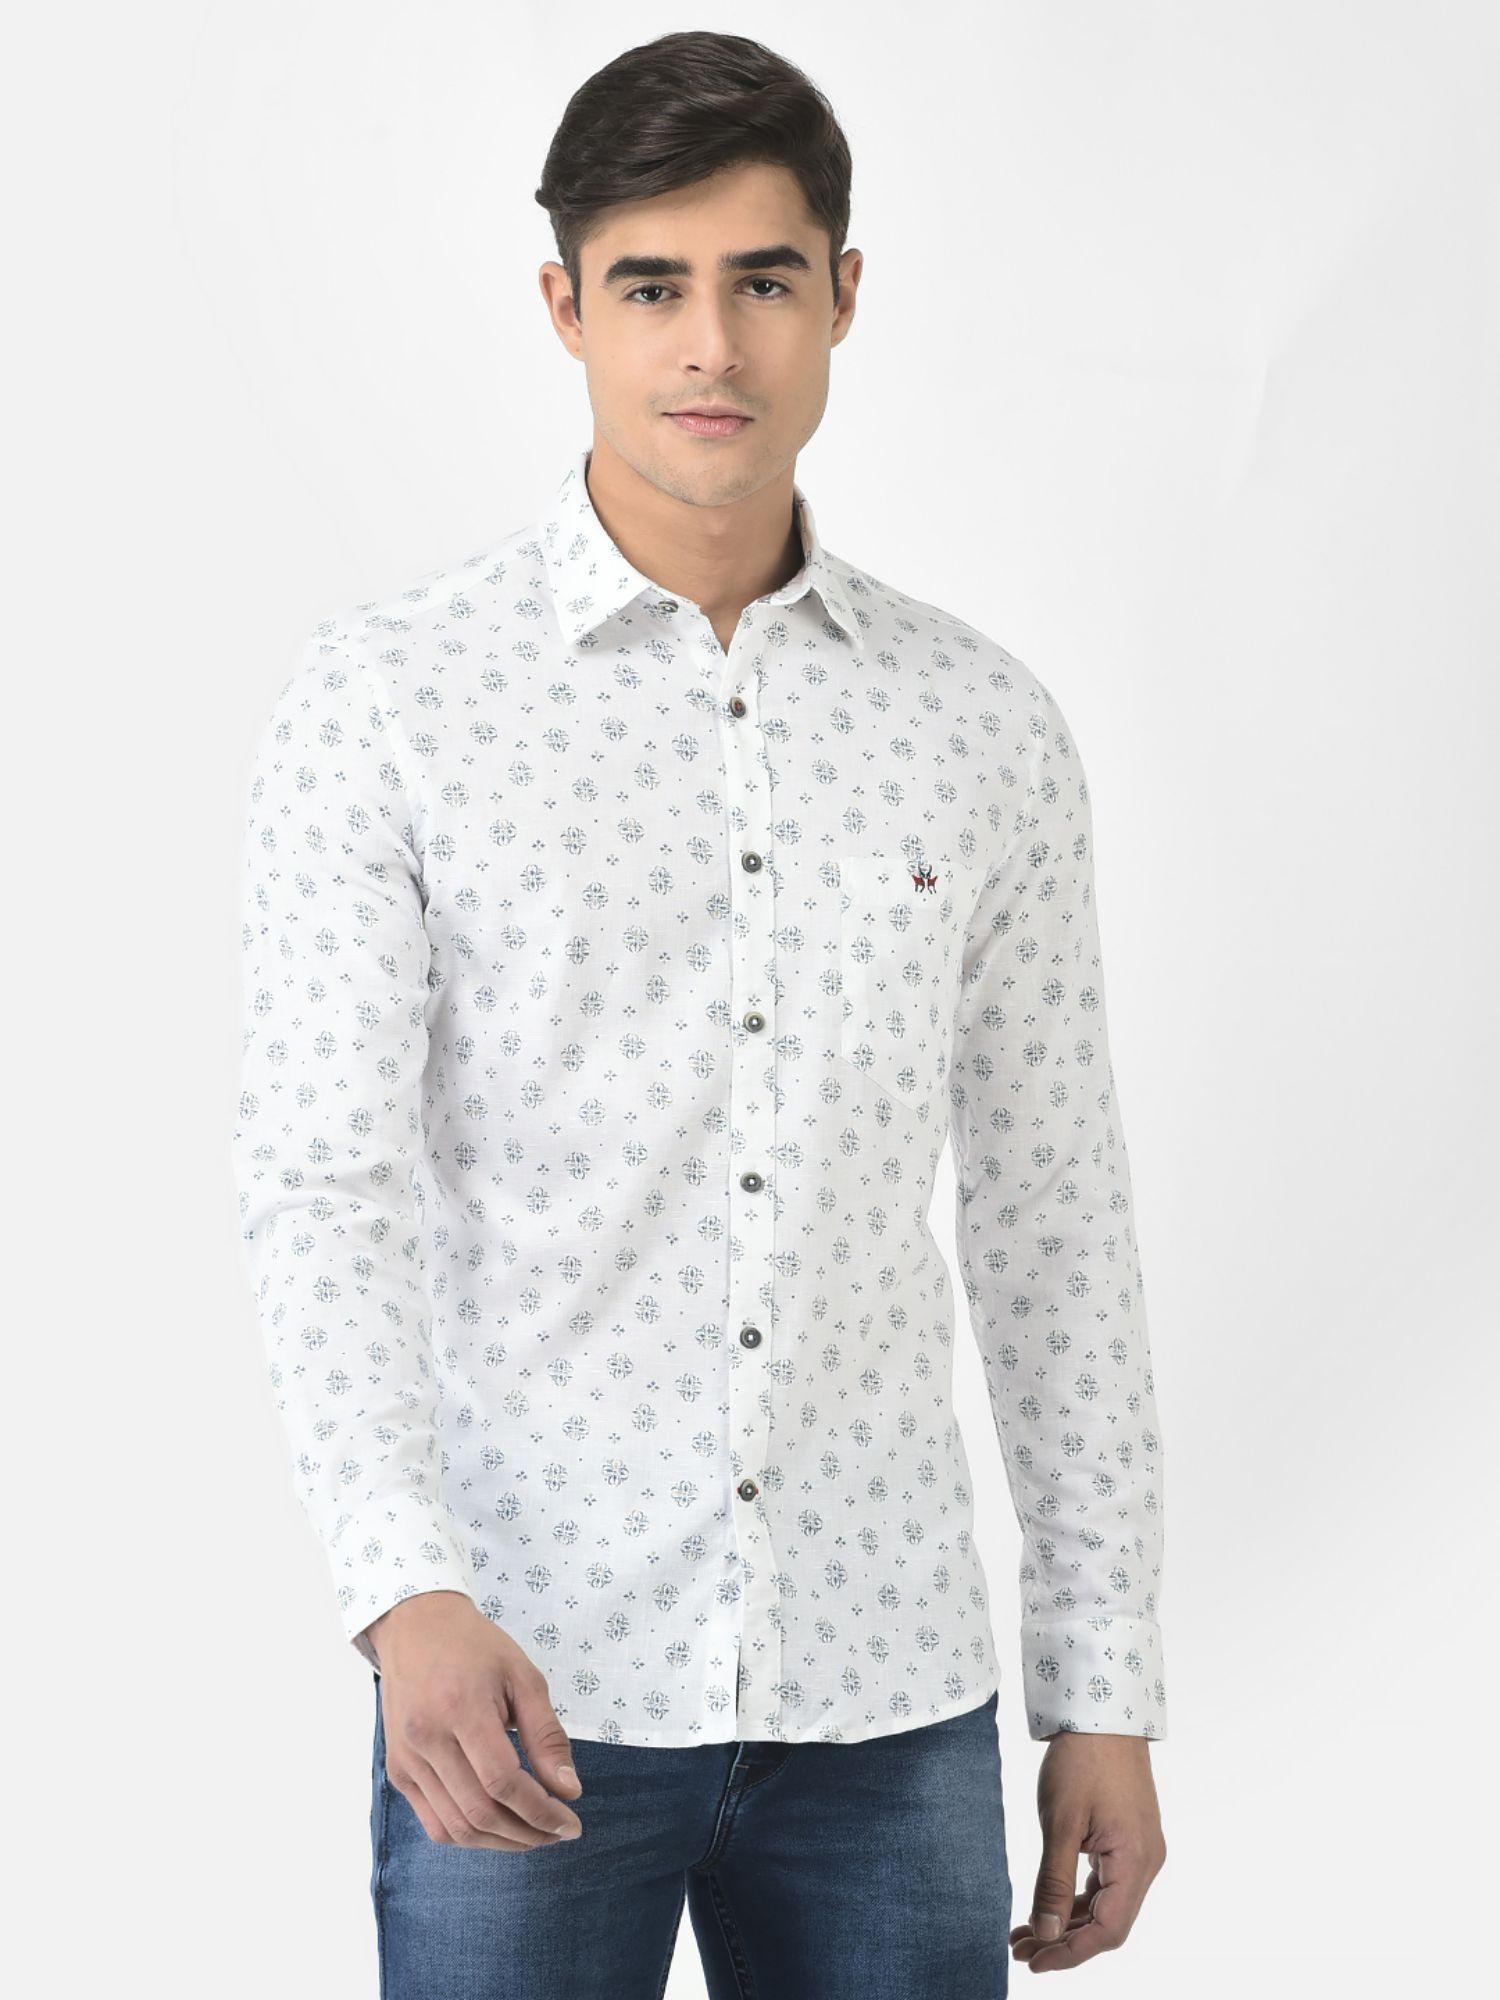 men white shirt in motif print